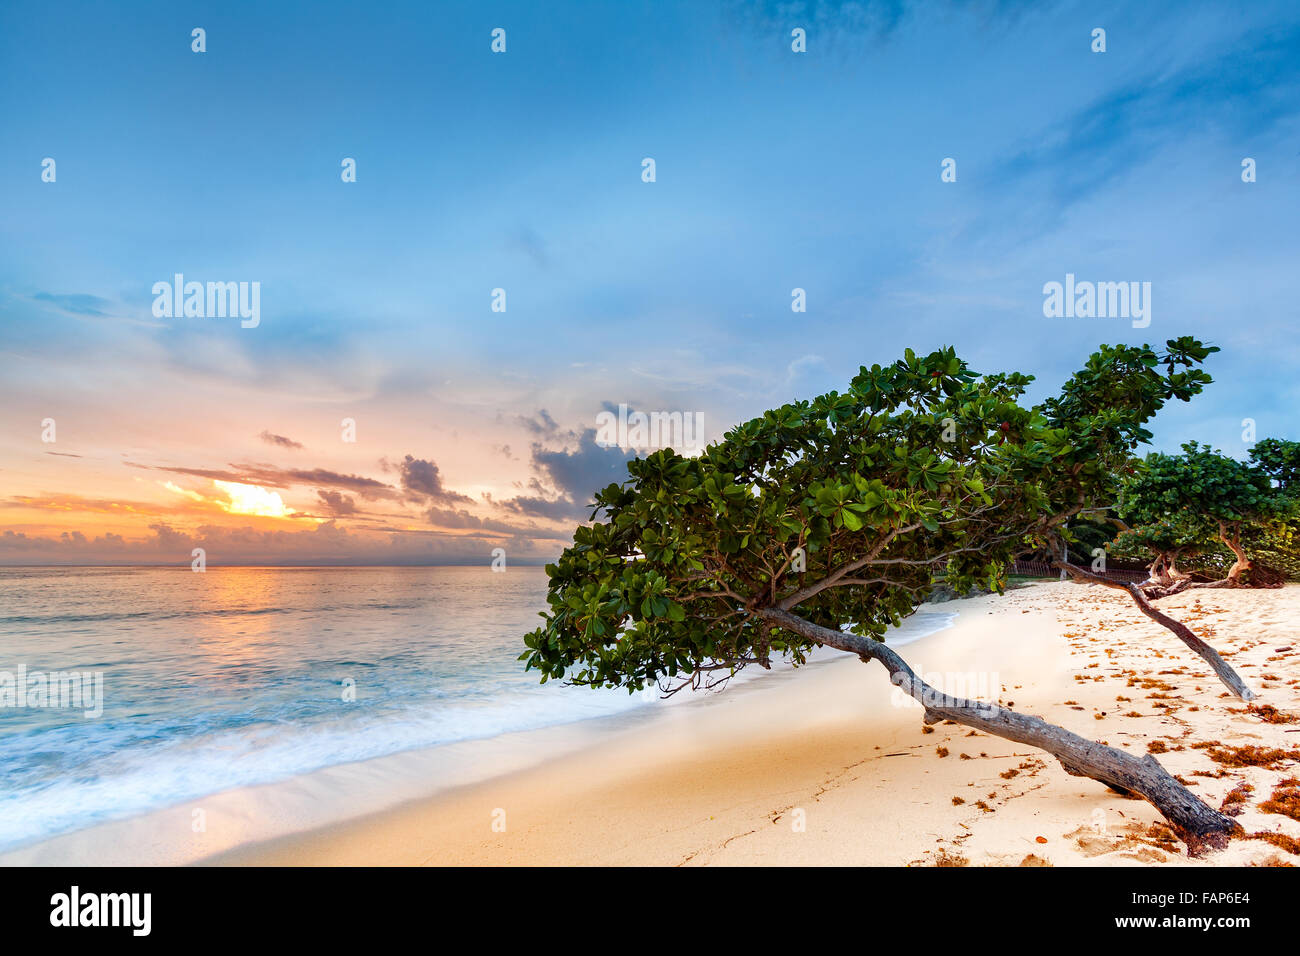 Seascape exotiques avec sea grape trees leaning au-dessus d'une plage de sable fin au coucher du soleil des Caraïbes, dans la région de Cayo Levantado, République Dominicaine Banque D'Images